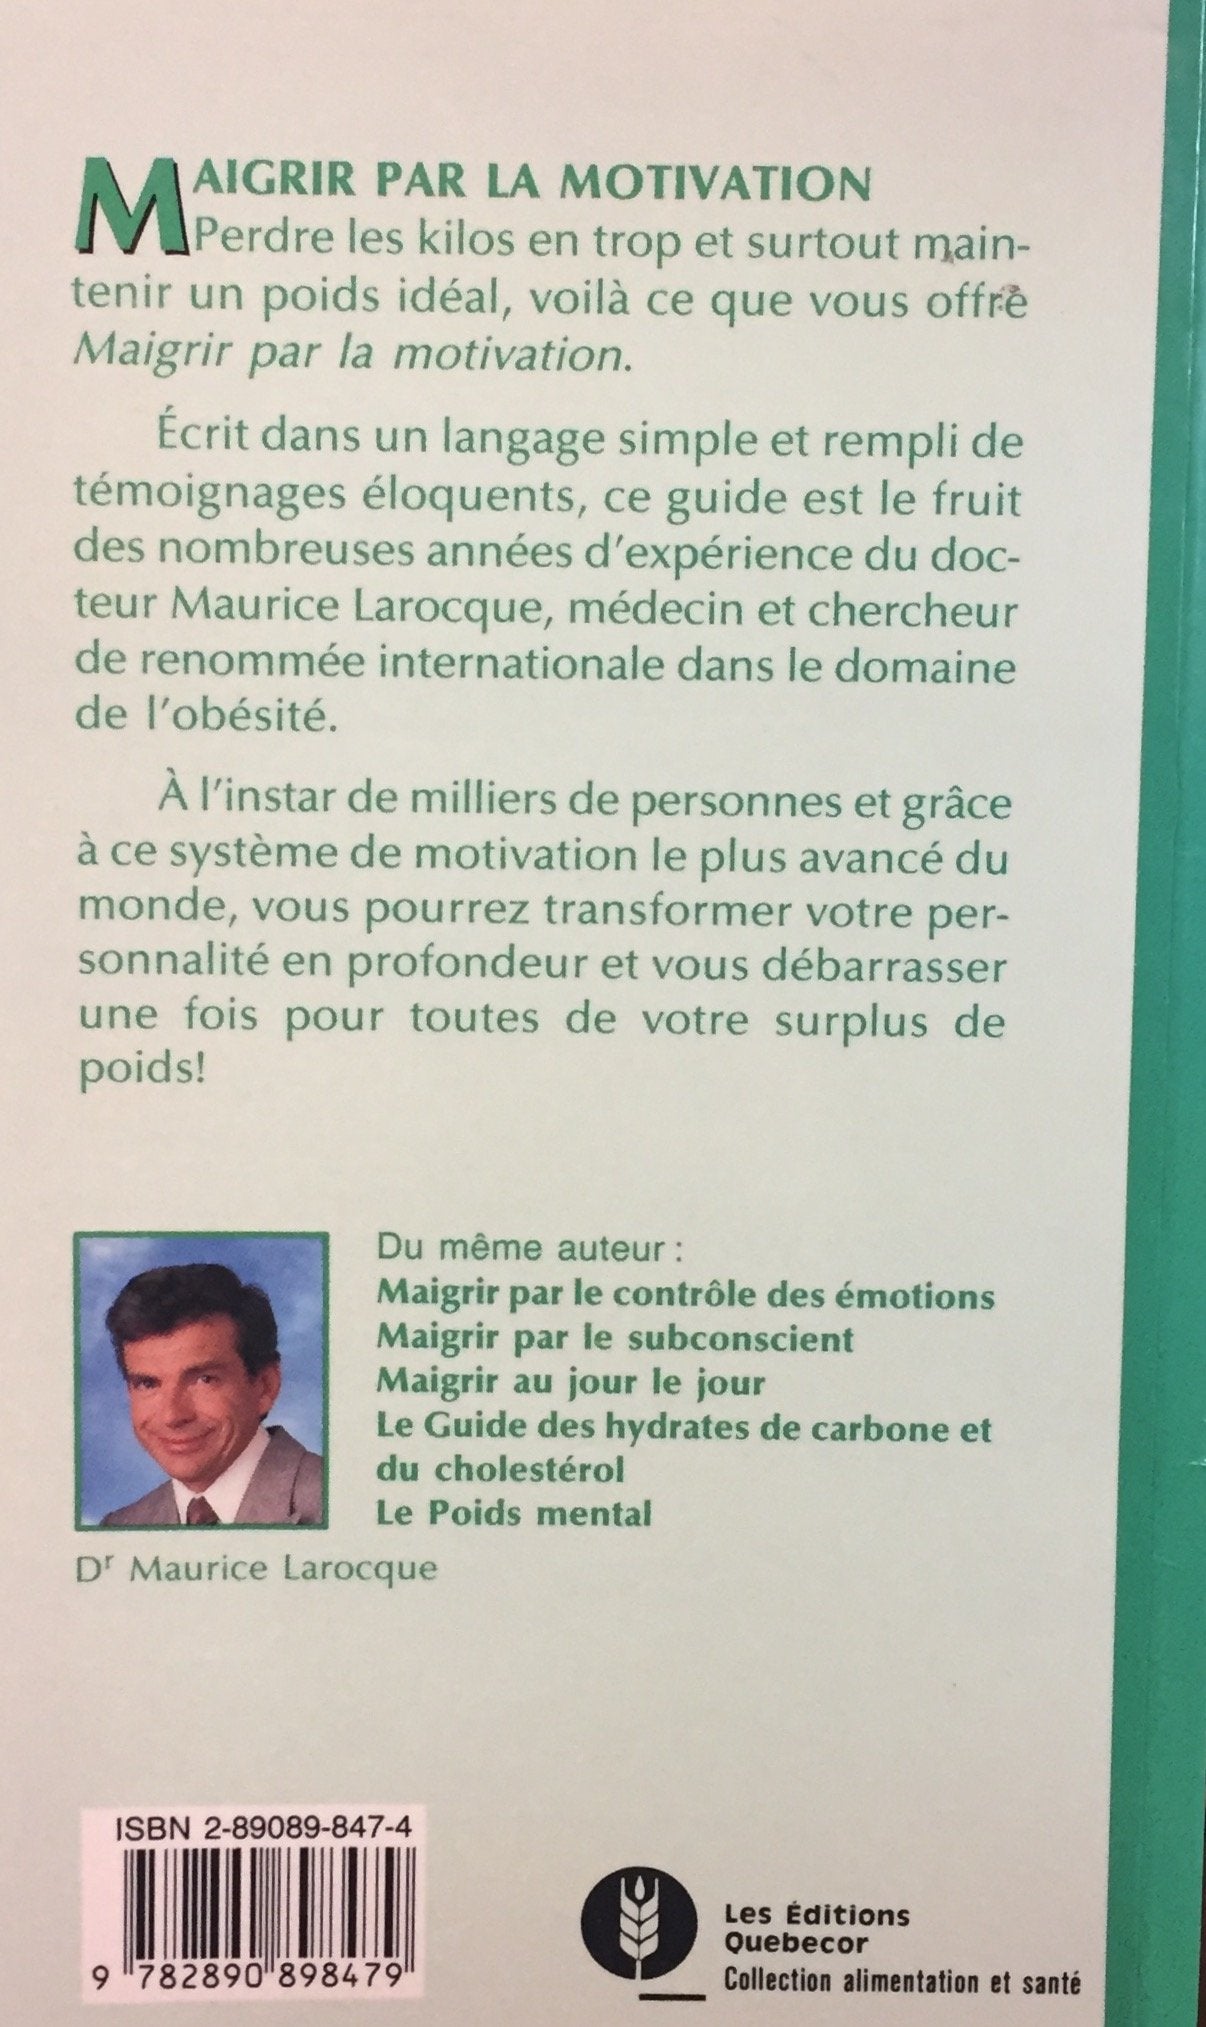 Maigrir par la motivation (Dr Maurice Larocque)